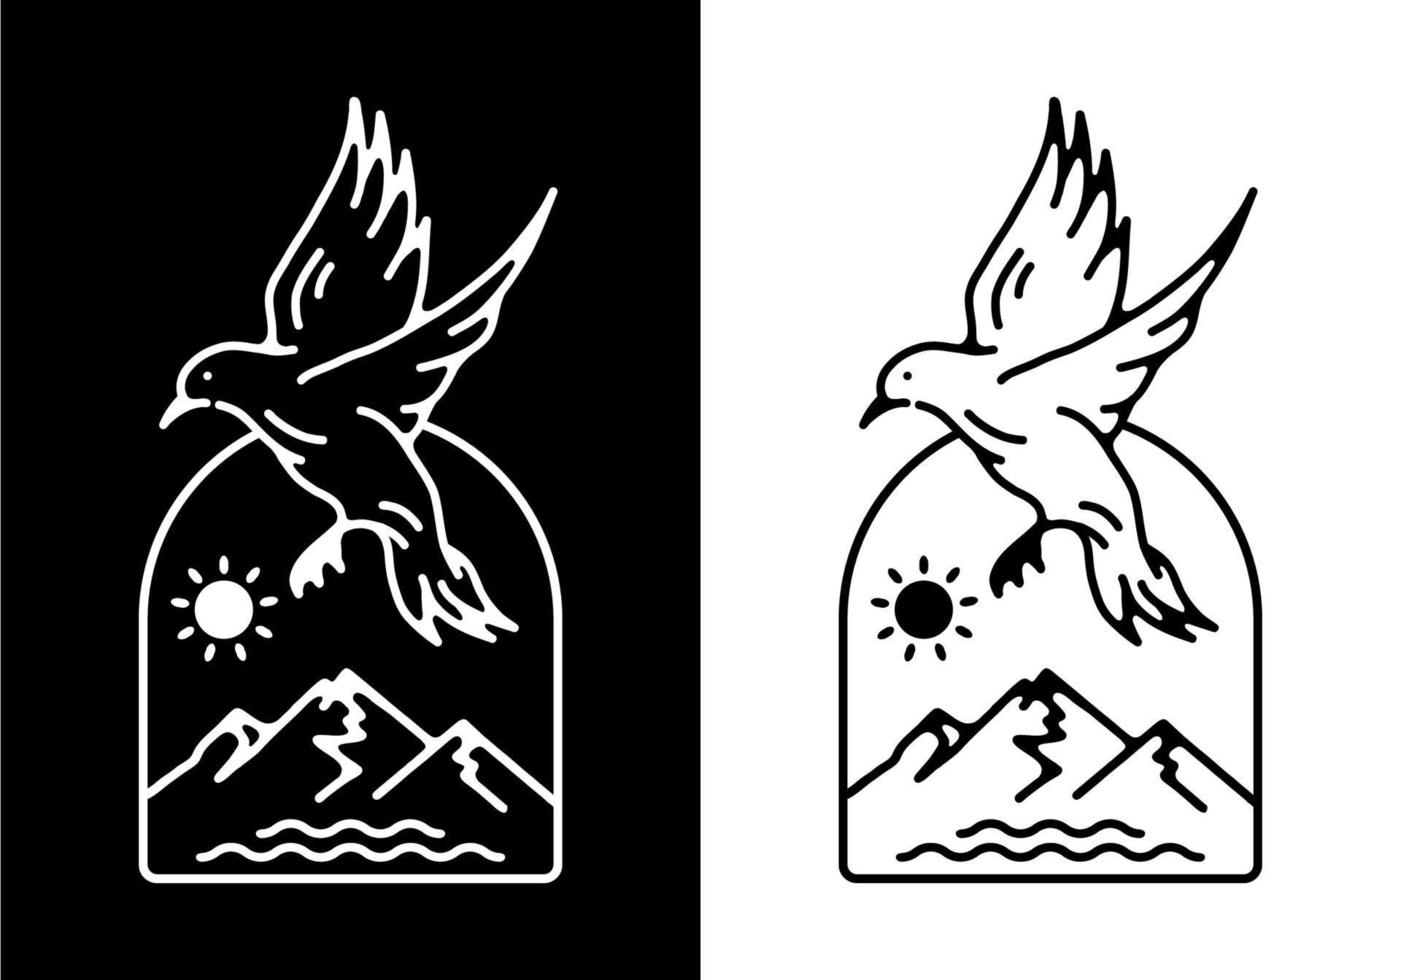 color blanco y negro del arte lineal de aves voladoras vector